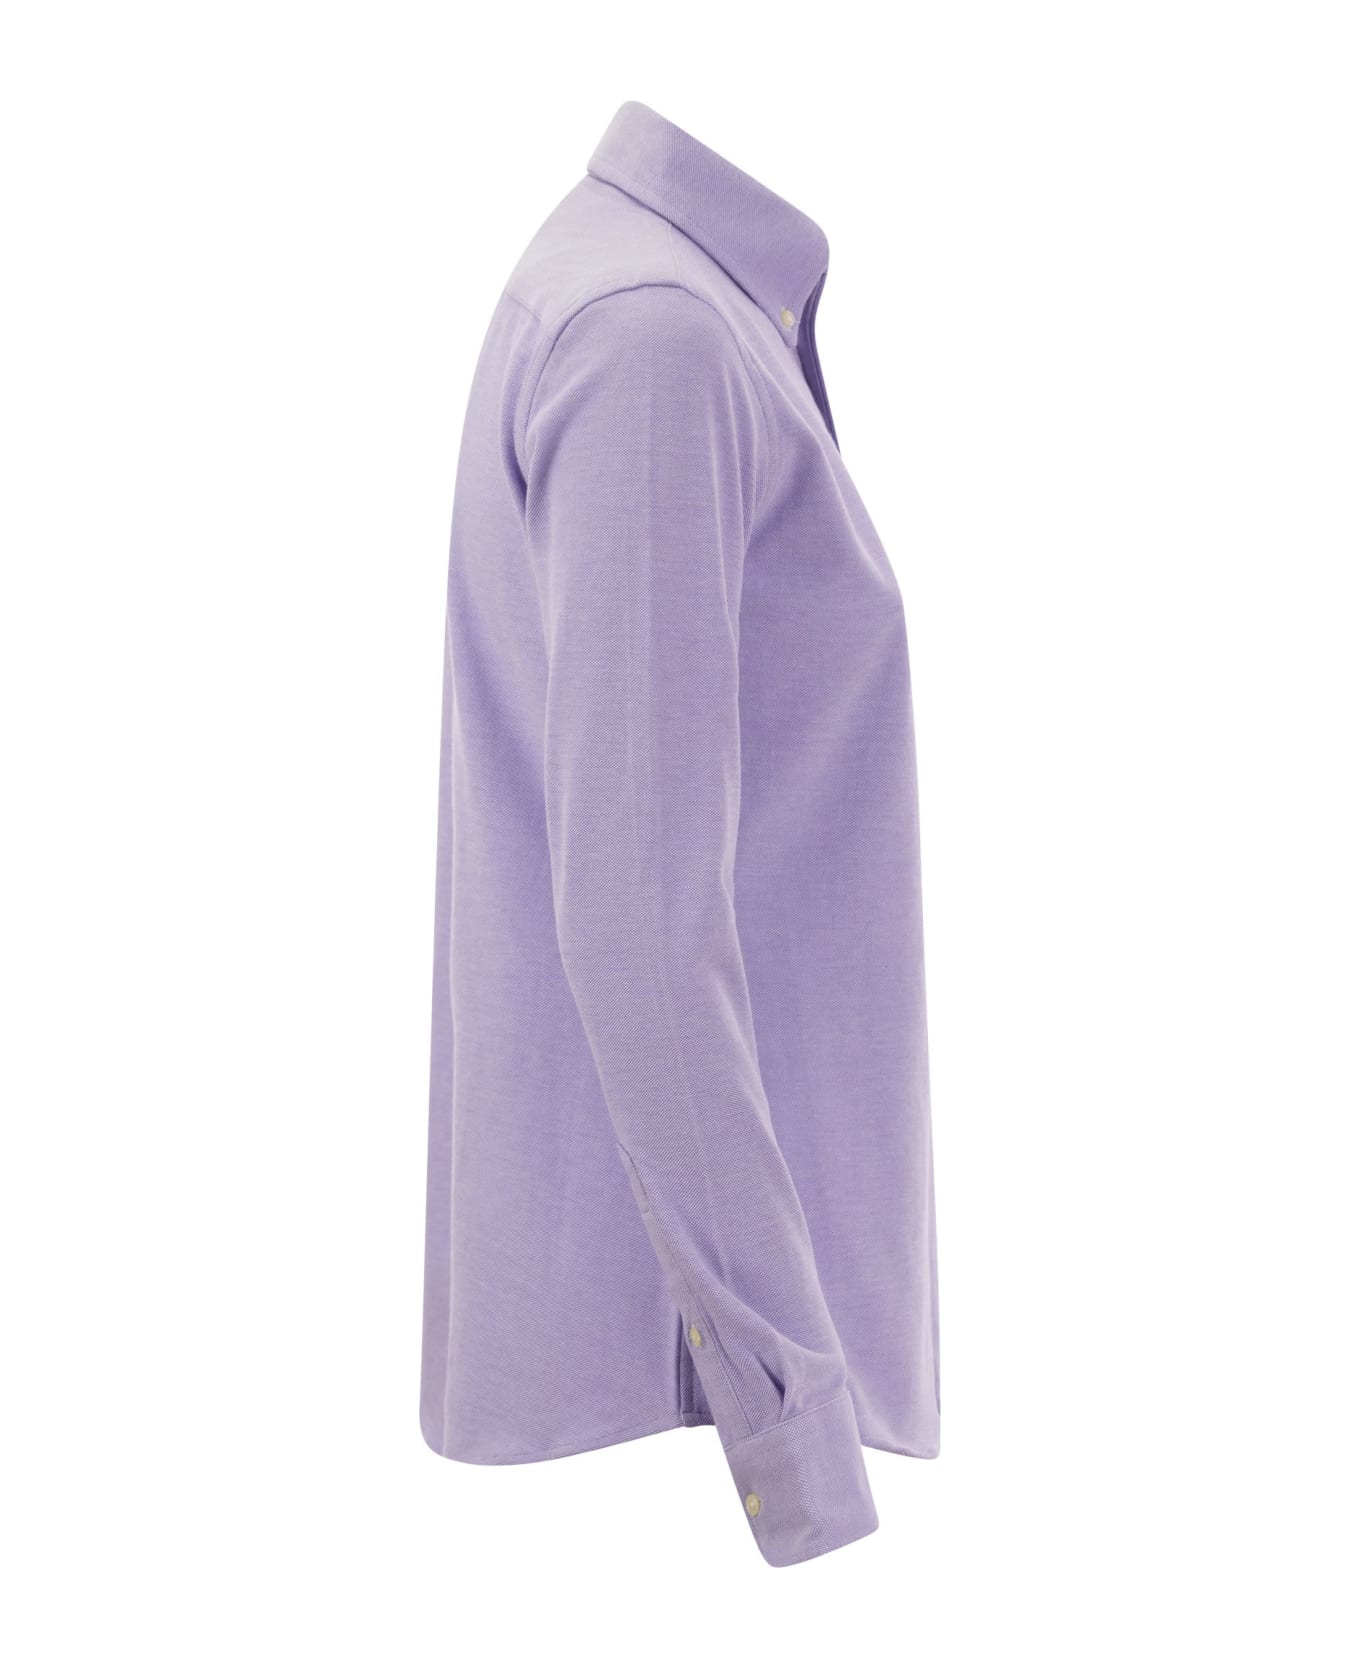 Ralph Lauren Oxford Shirt - Lilac